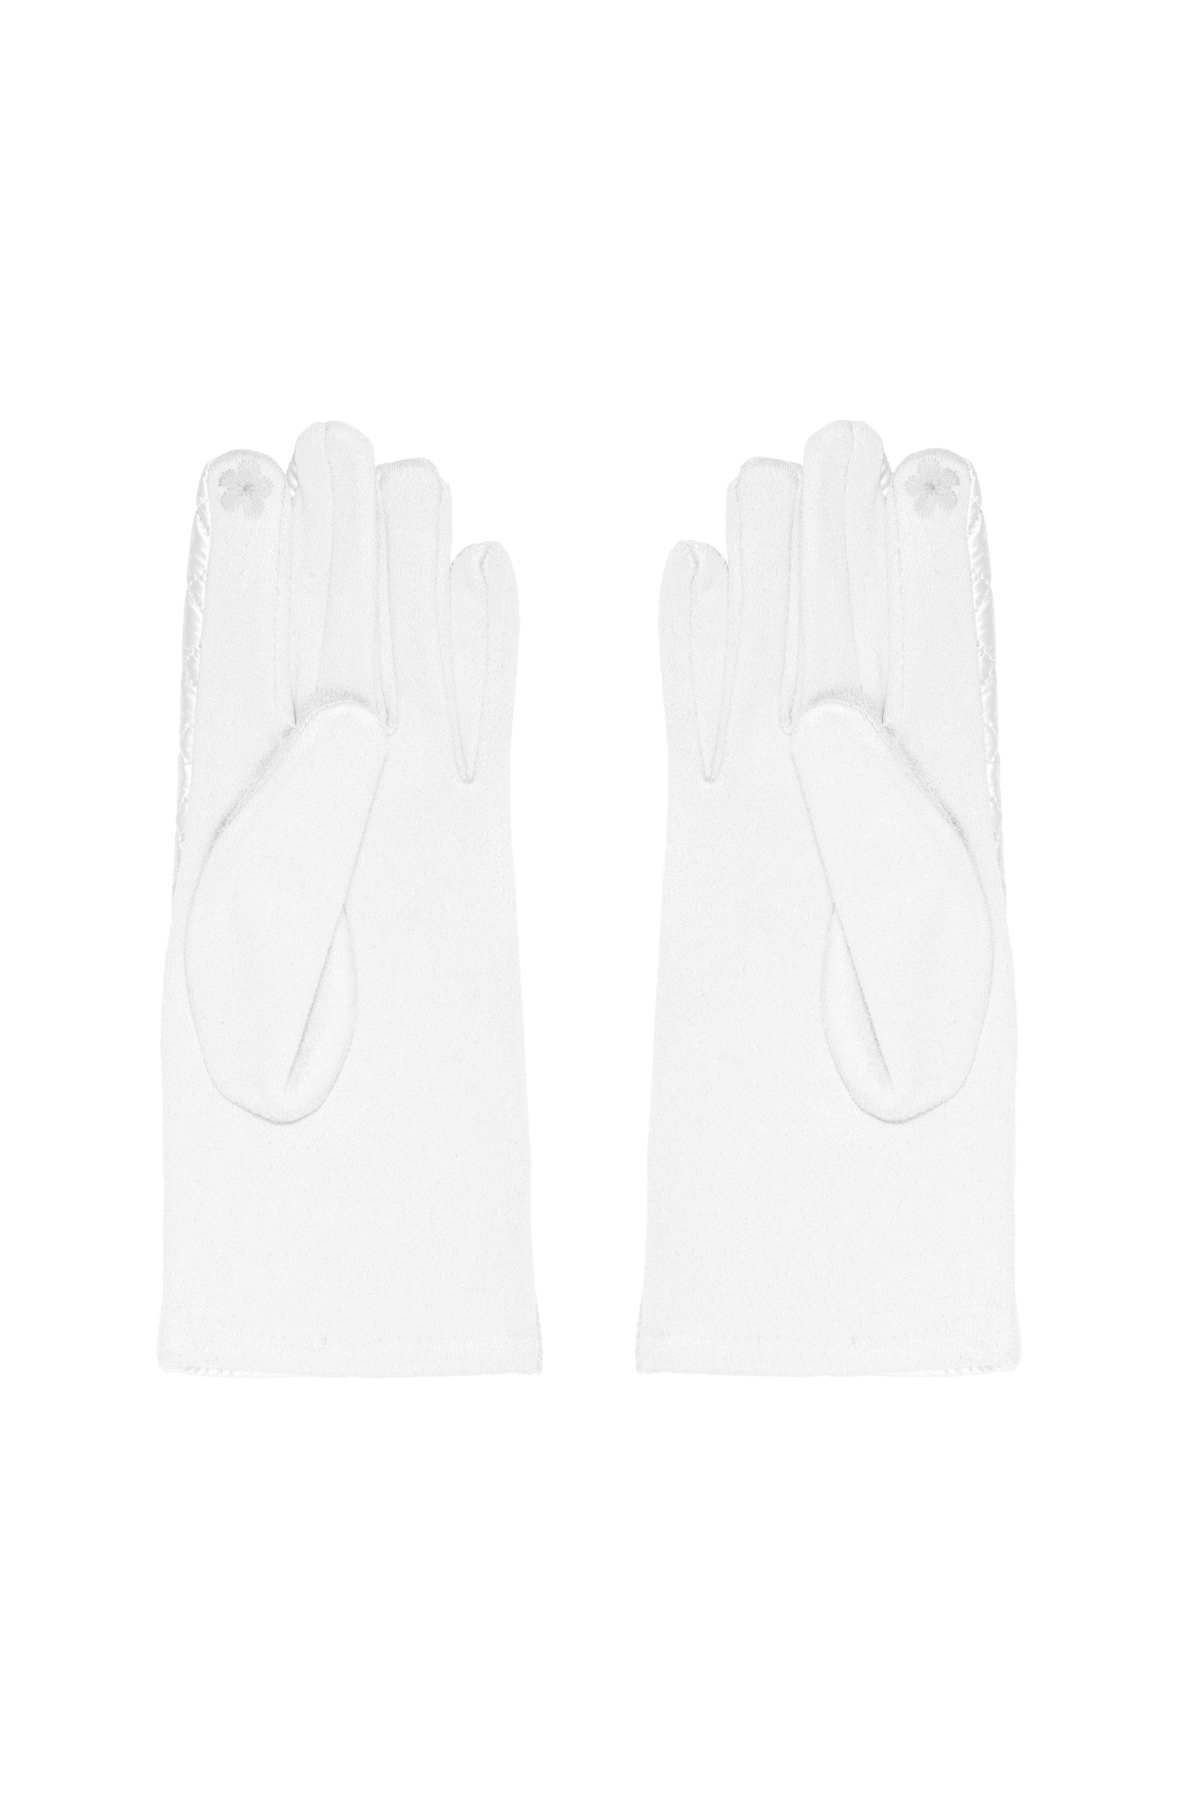 Handschuhe mit genähtem Muster - weiß h5 Bild3